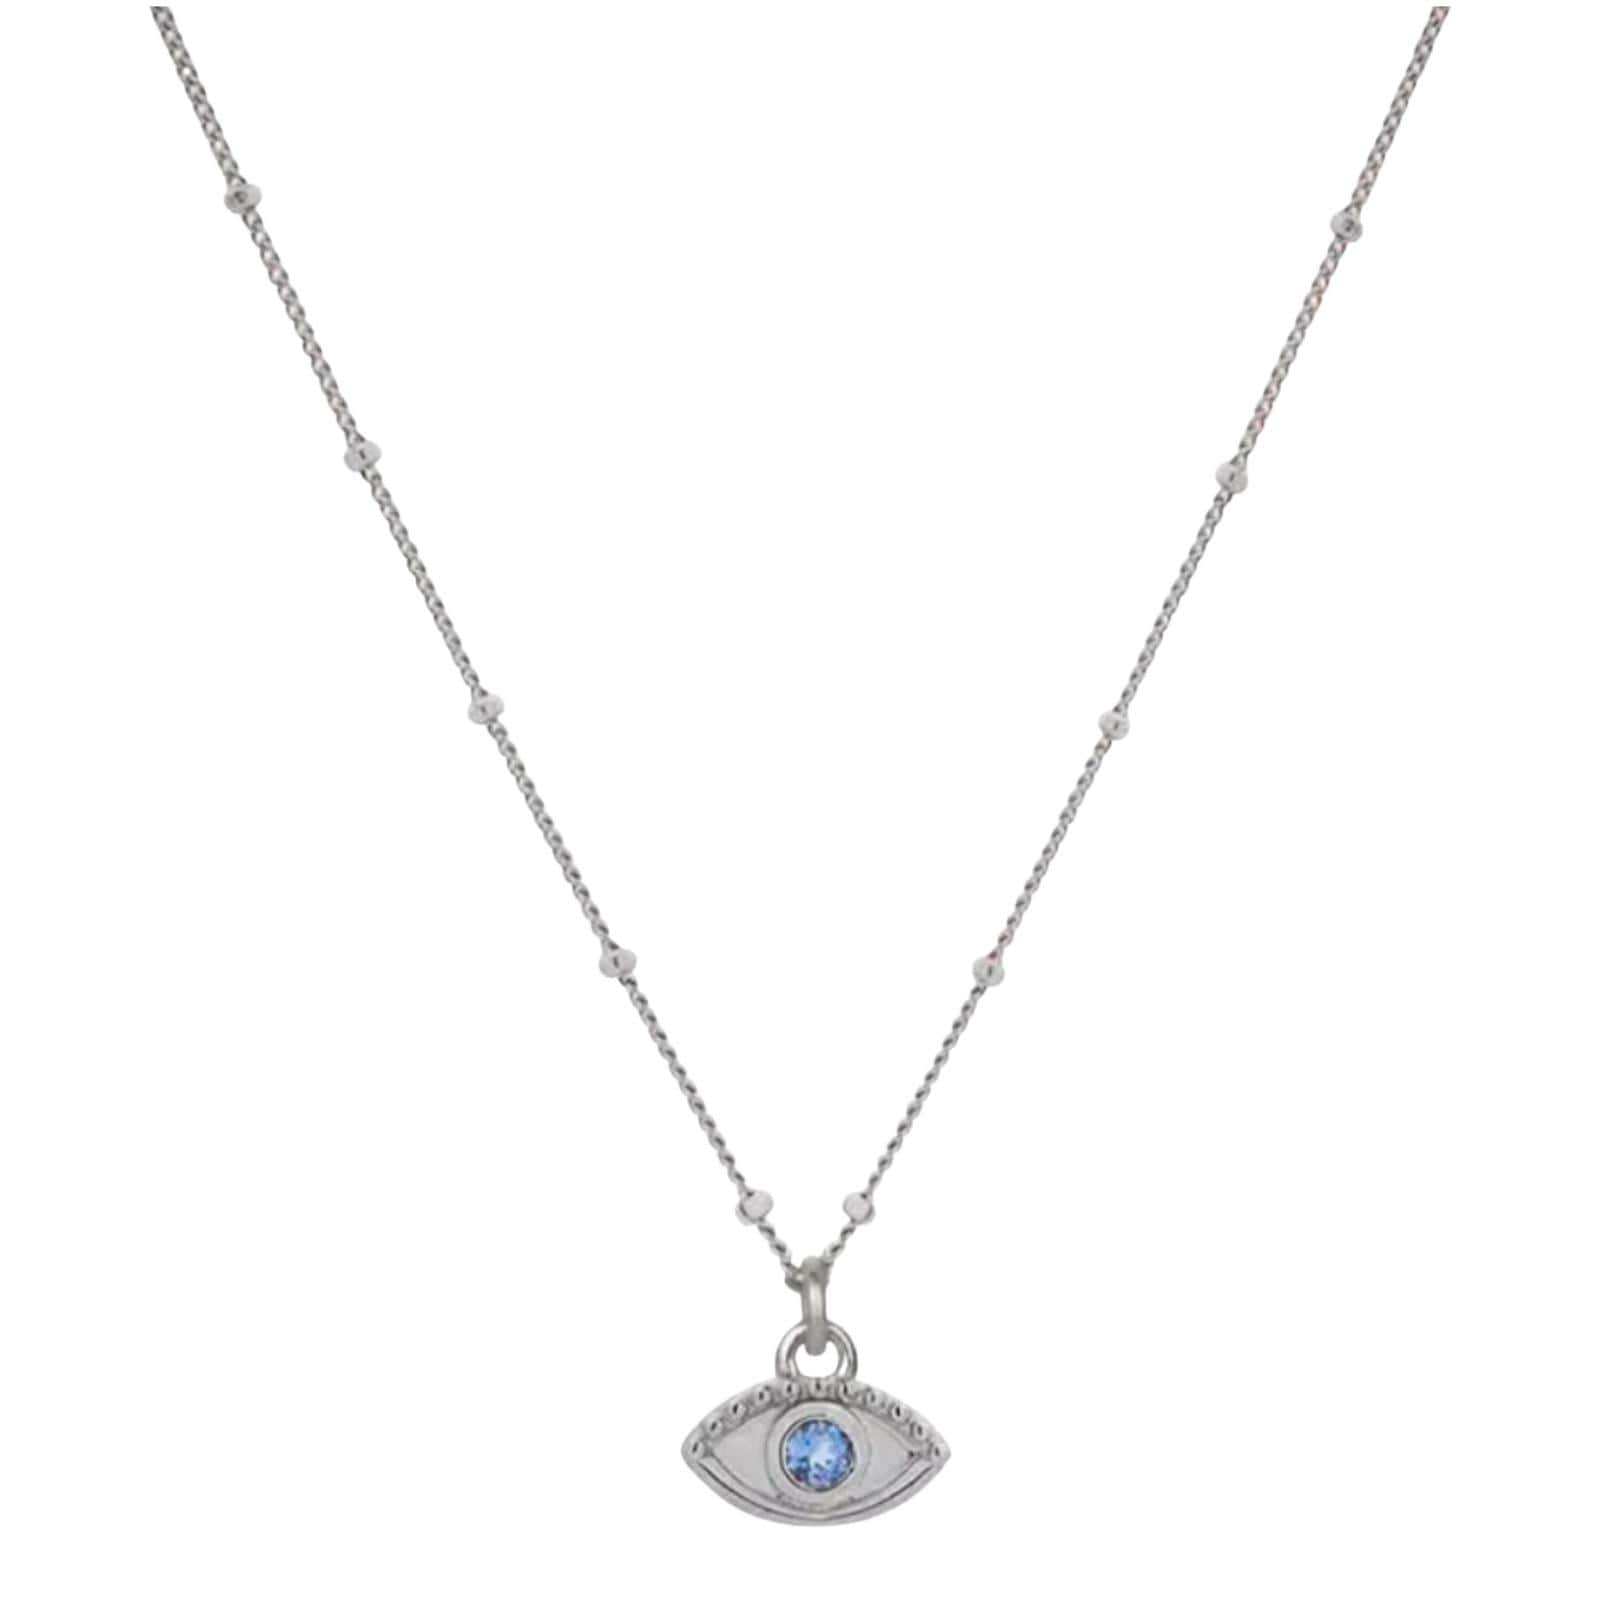 Product Afbeelding vooraanzicht van onze nieuwe boze oog ketting. Deze lieve ketting is verstelbaar tot 45 centimeter. Het boze oog en ketting is gemaakt van 925 sterling zilver. Het oog is afgewerkt met een blauwe zirkonia.